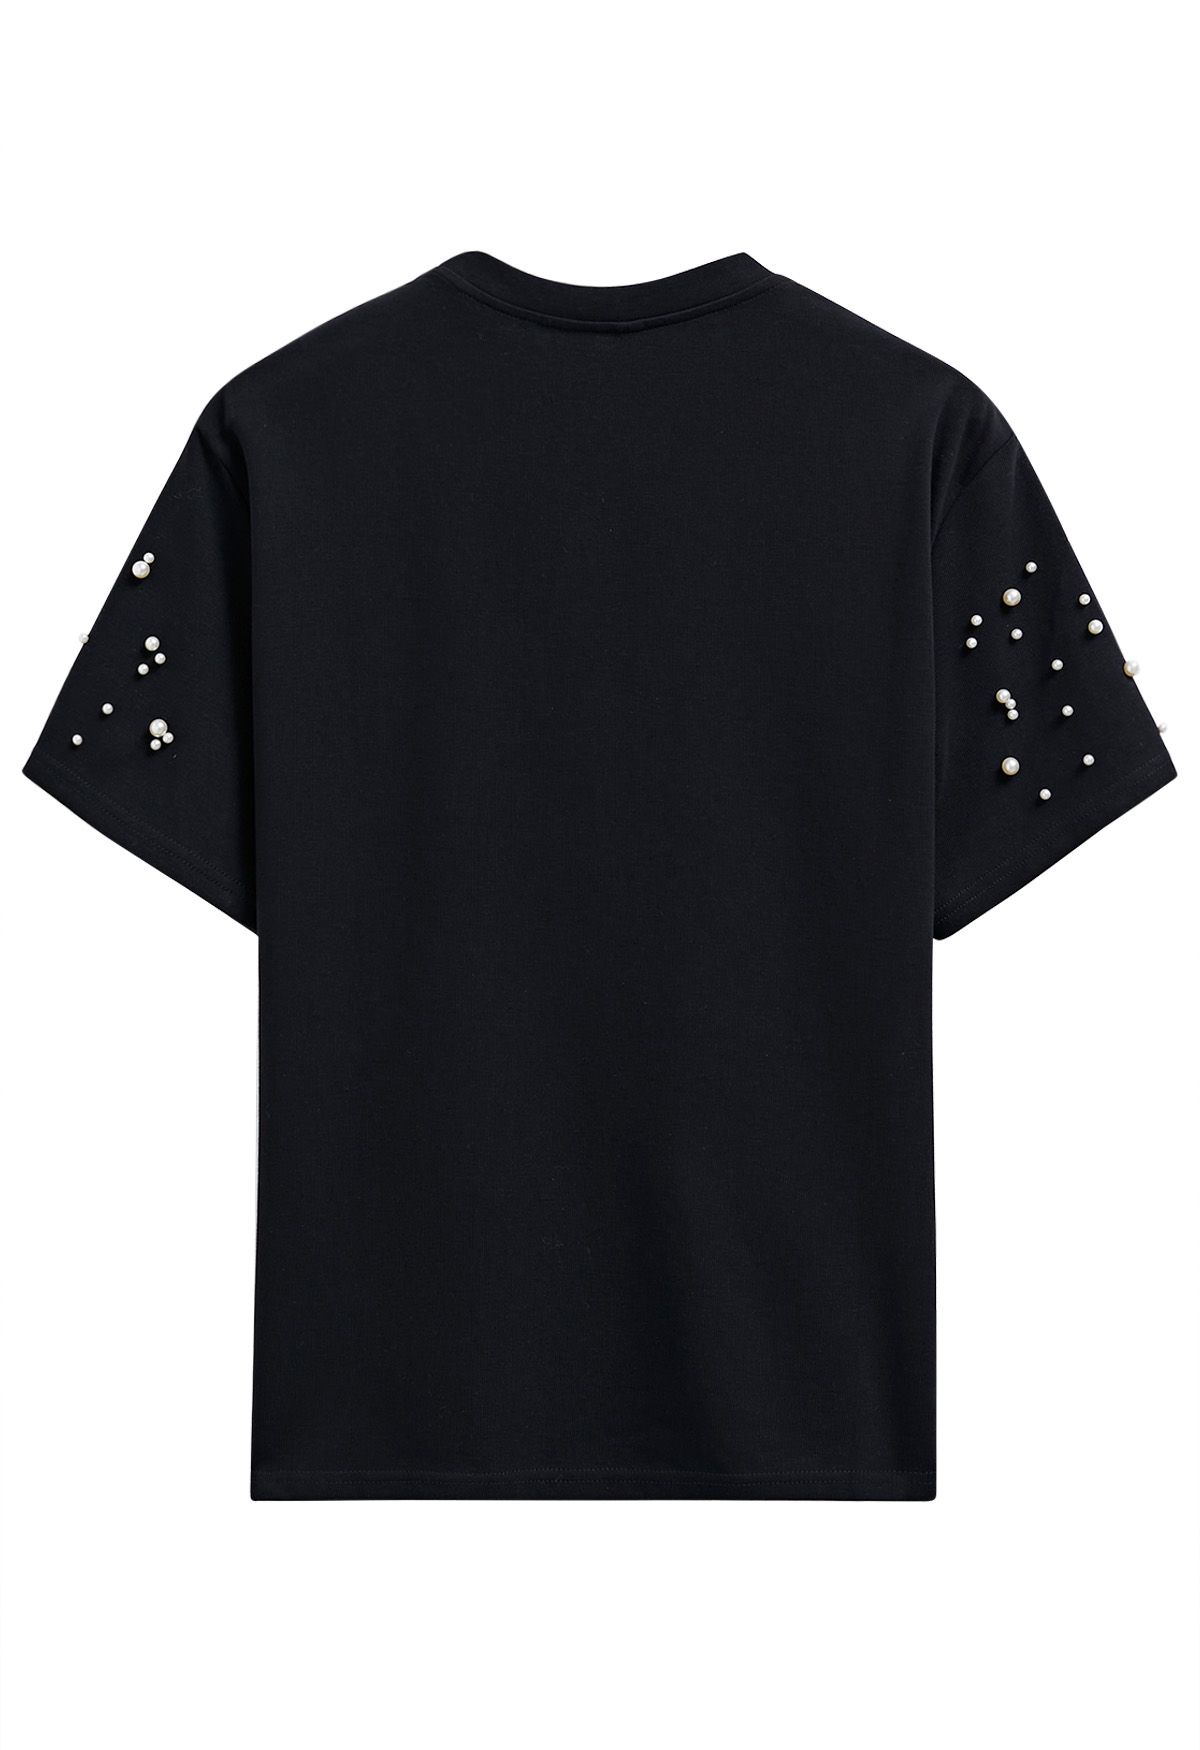 Anspruchsvolles T-Shirt mit Perlenbesatz in Schwarz